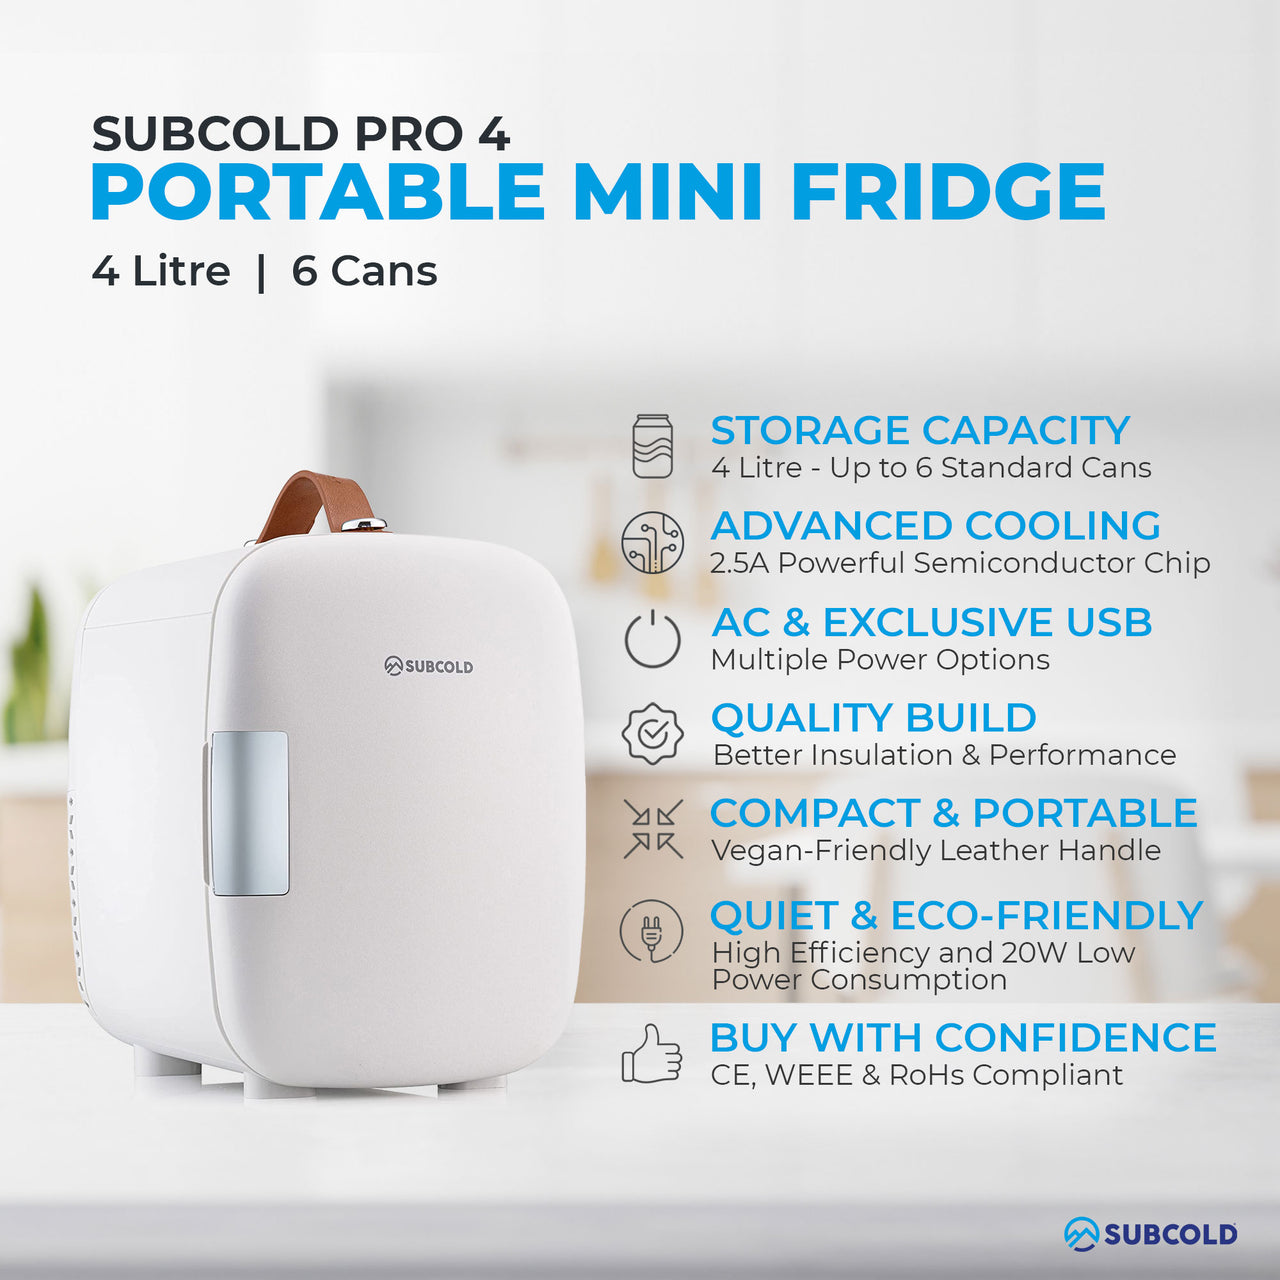 Subcold Pro 4 litre white mini fridge features infographic